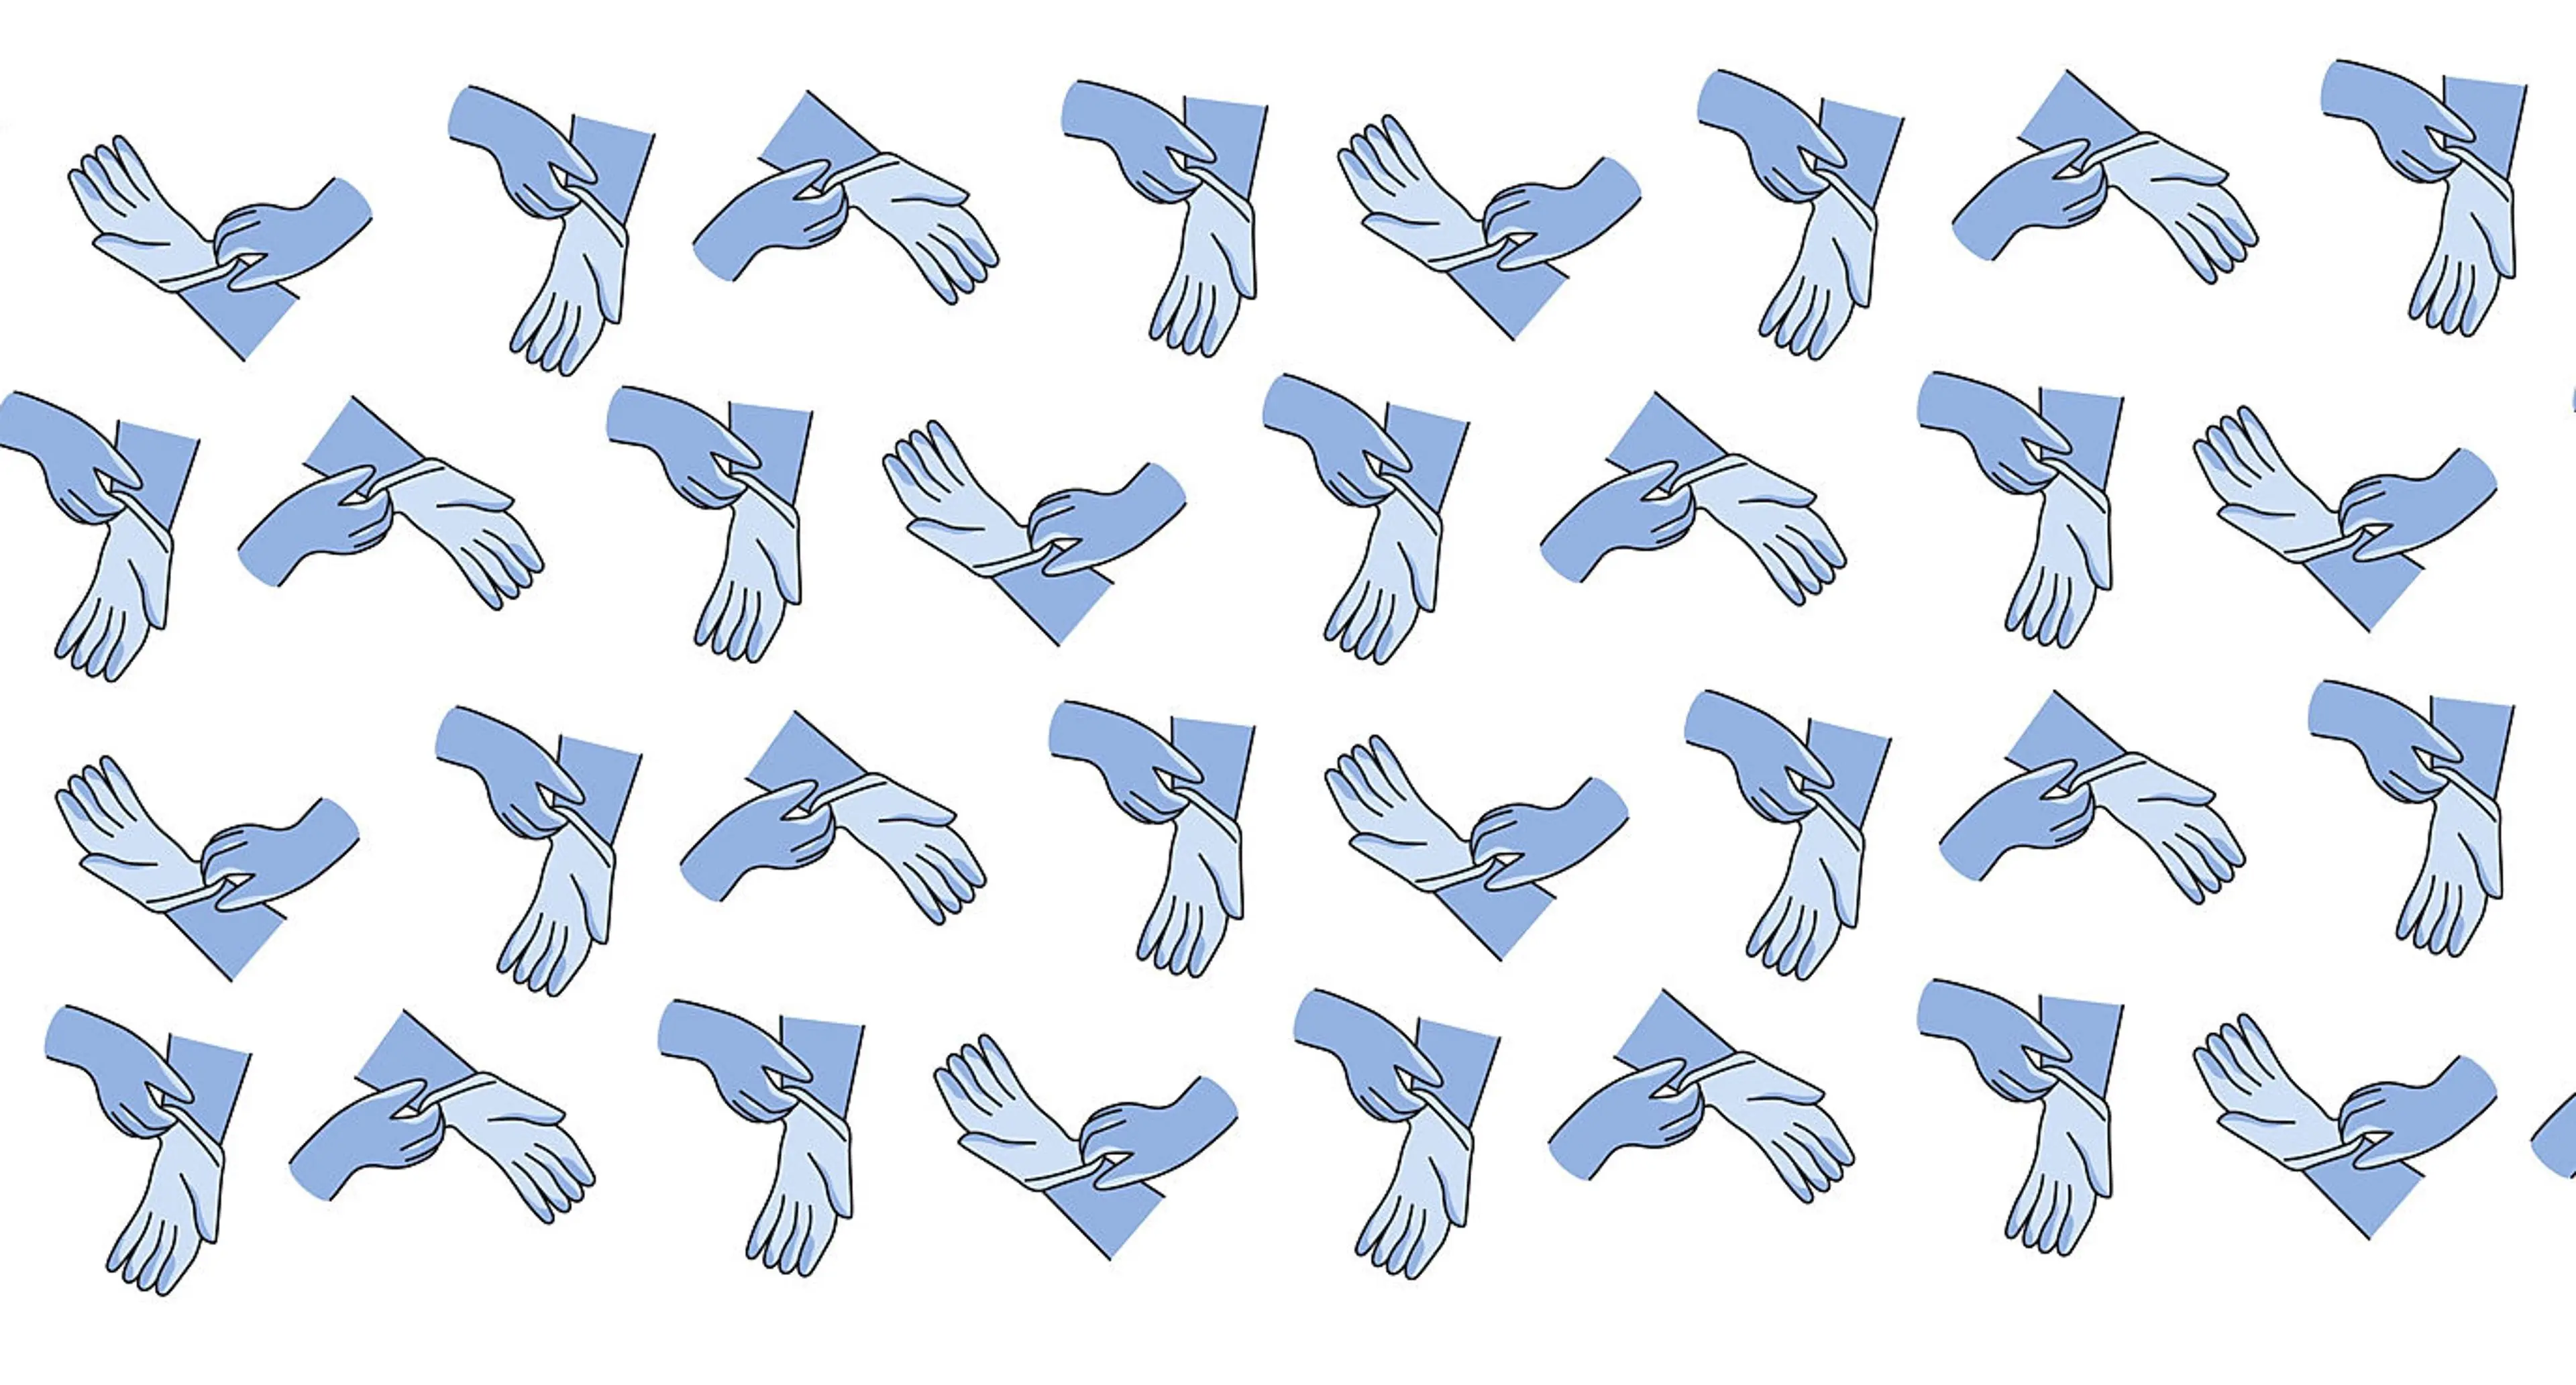 Overforbruk av hansker illustrert med masse hansker